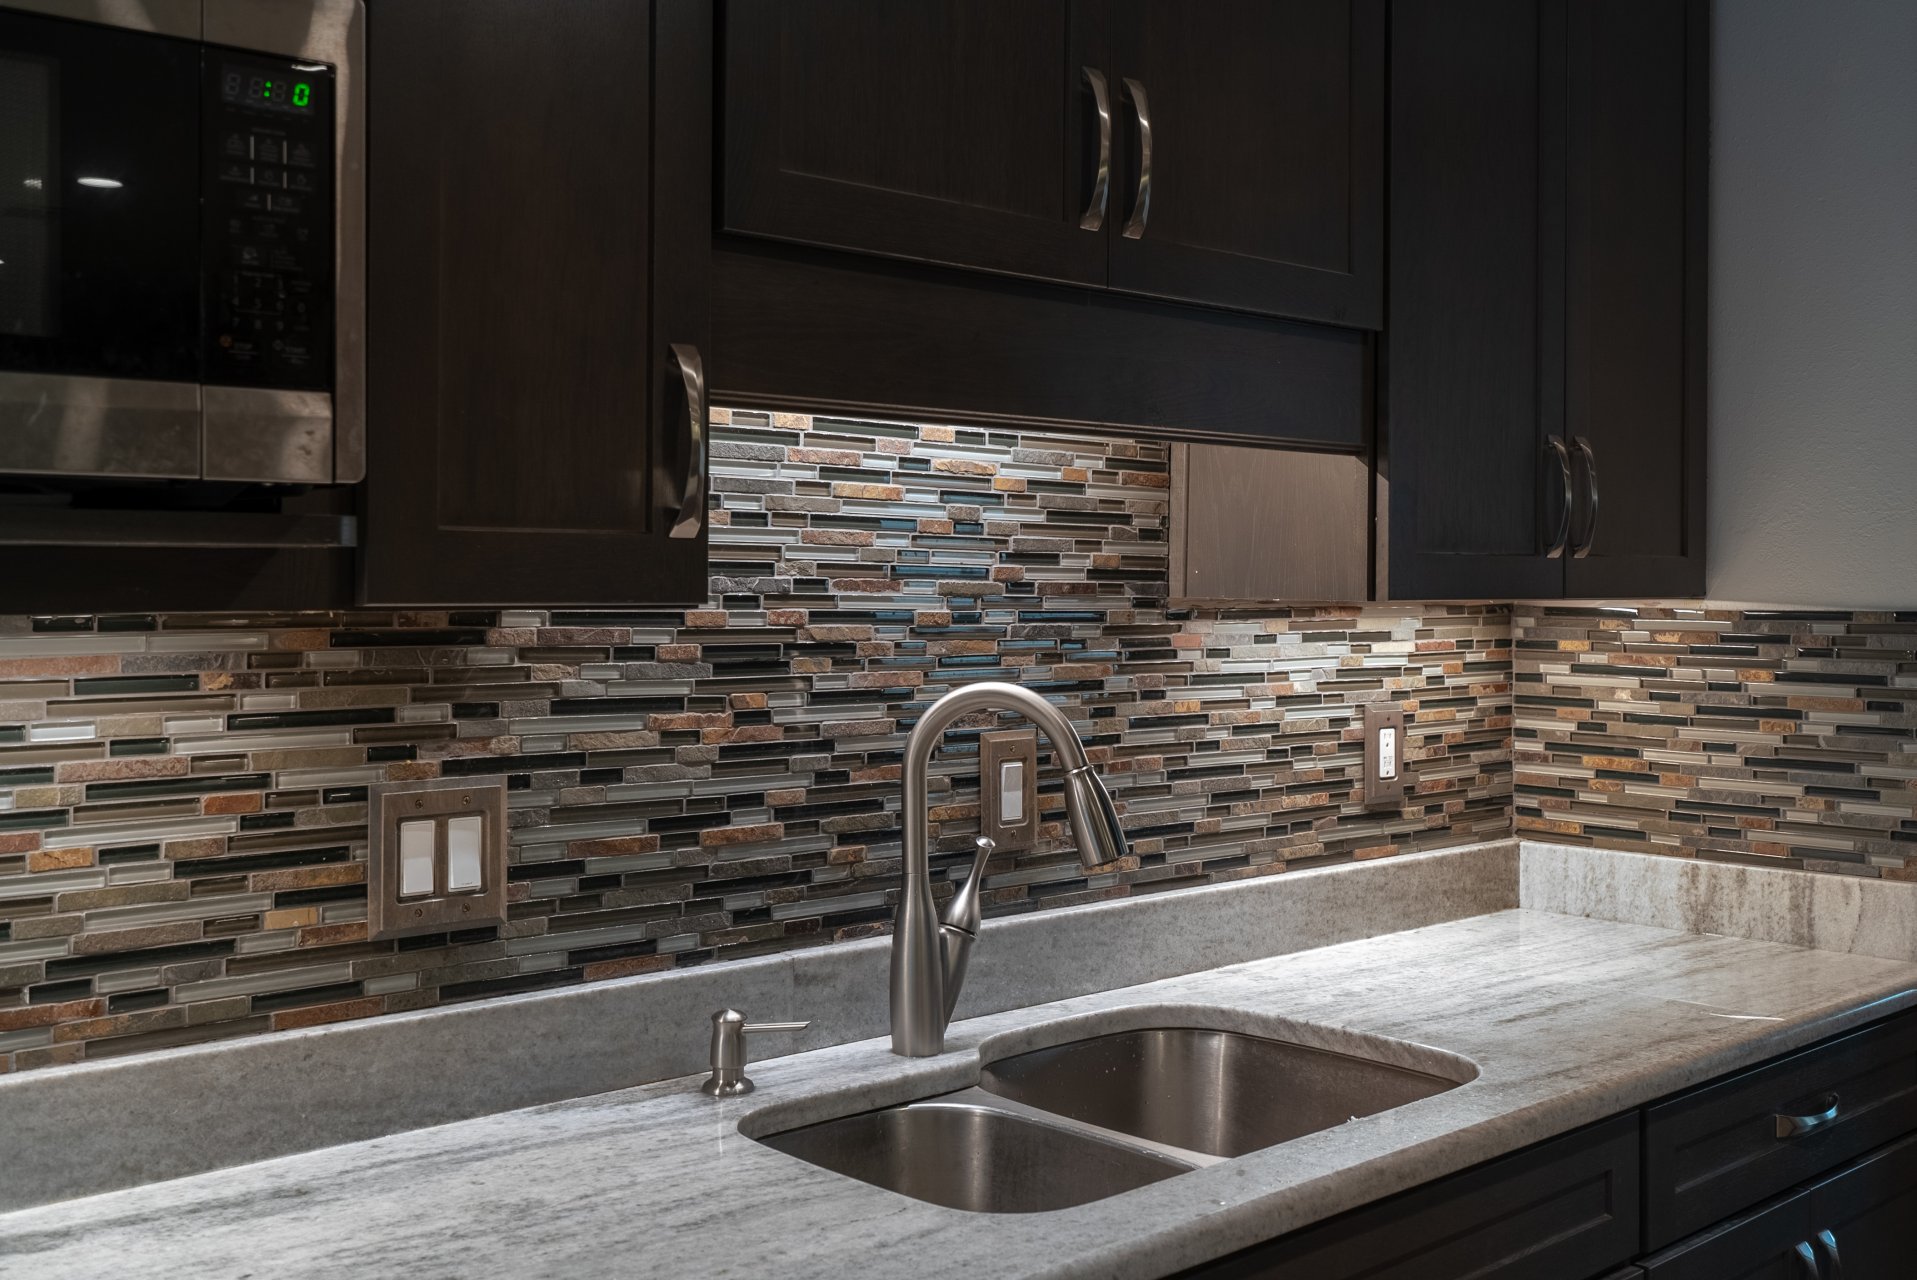 Kitchen and Dining Room Remodel - tile backsplash detail